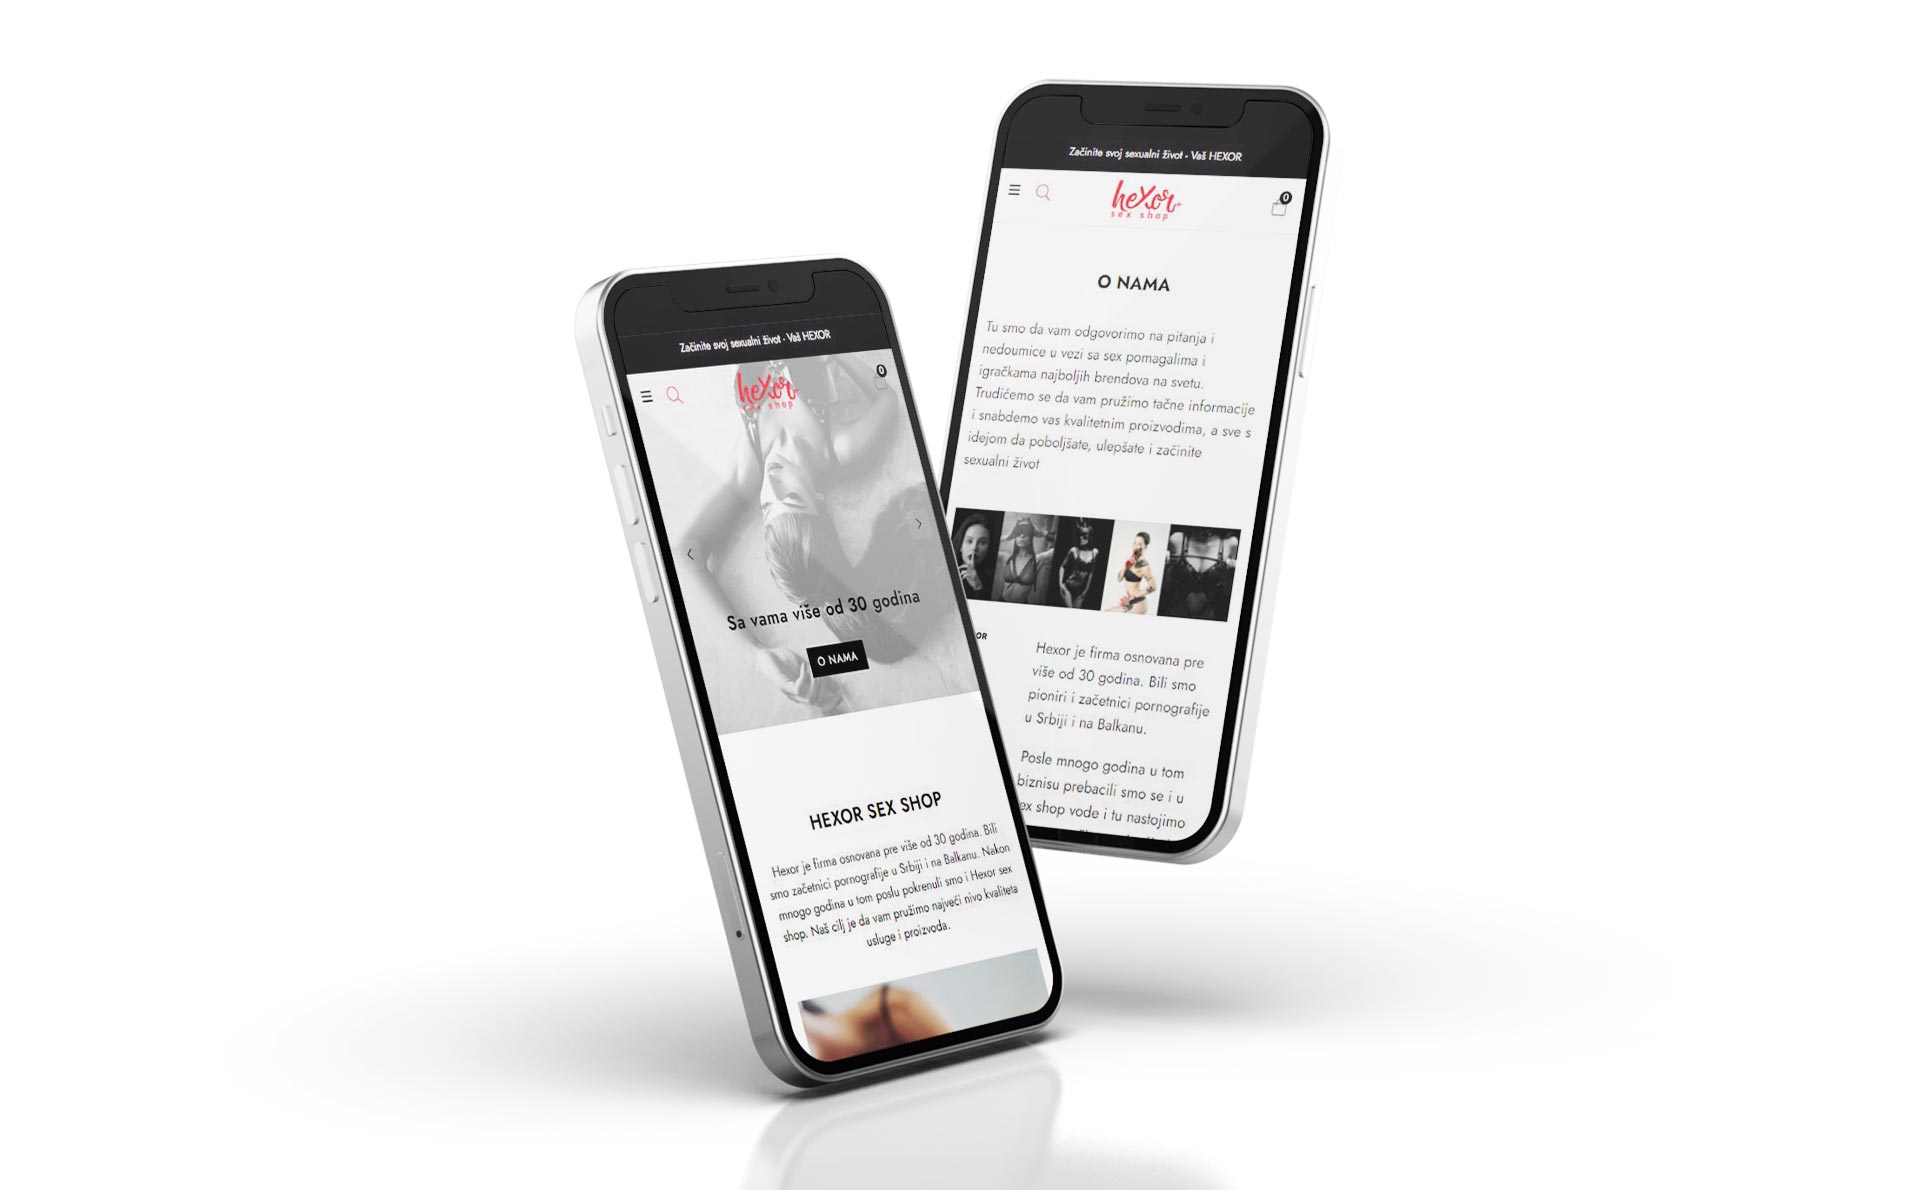 Fotografija mobilnih telefona sa naslovnom stranicom web shopa sexyshopsrbija.com firme Hexor i stranicom O nama – primer za pravljenje sajtova od strane profesionalaca.